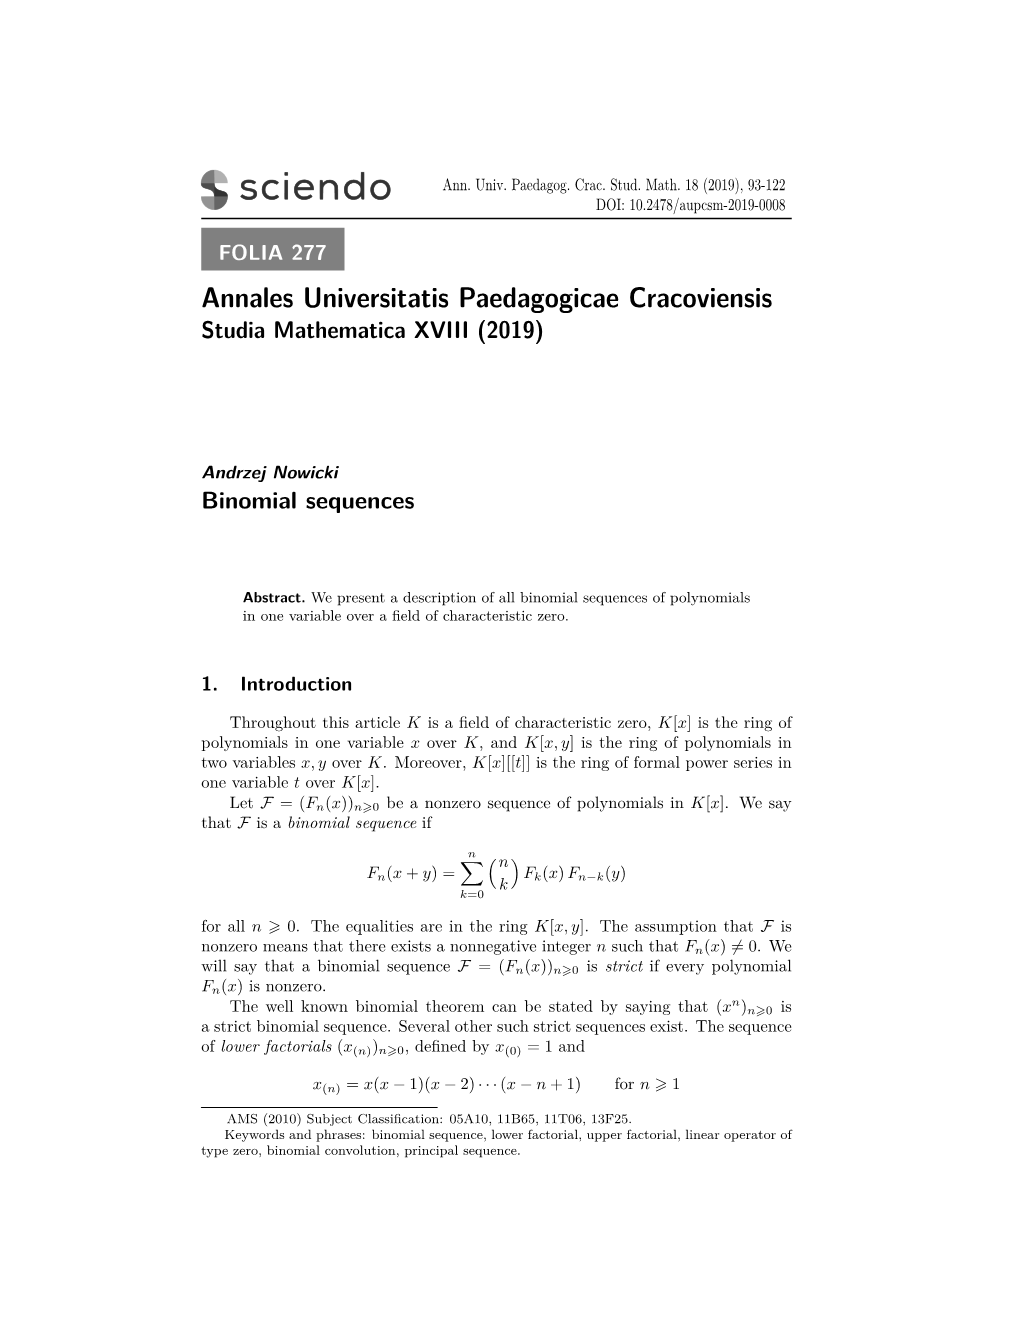 Annales Universitatis Paedagogicae Cracoviensis Studia Mathematica XVIII (2019)